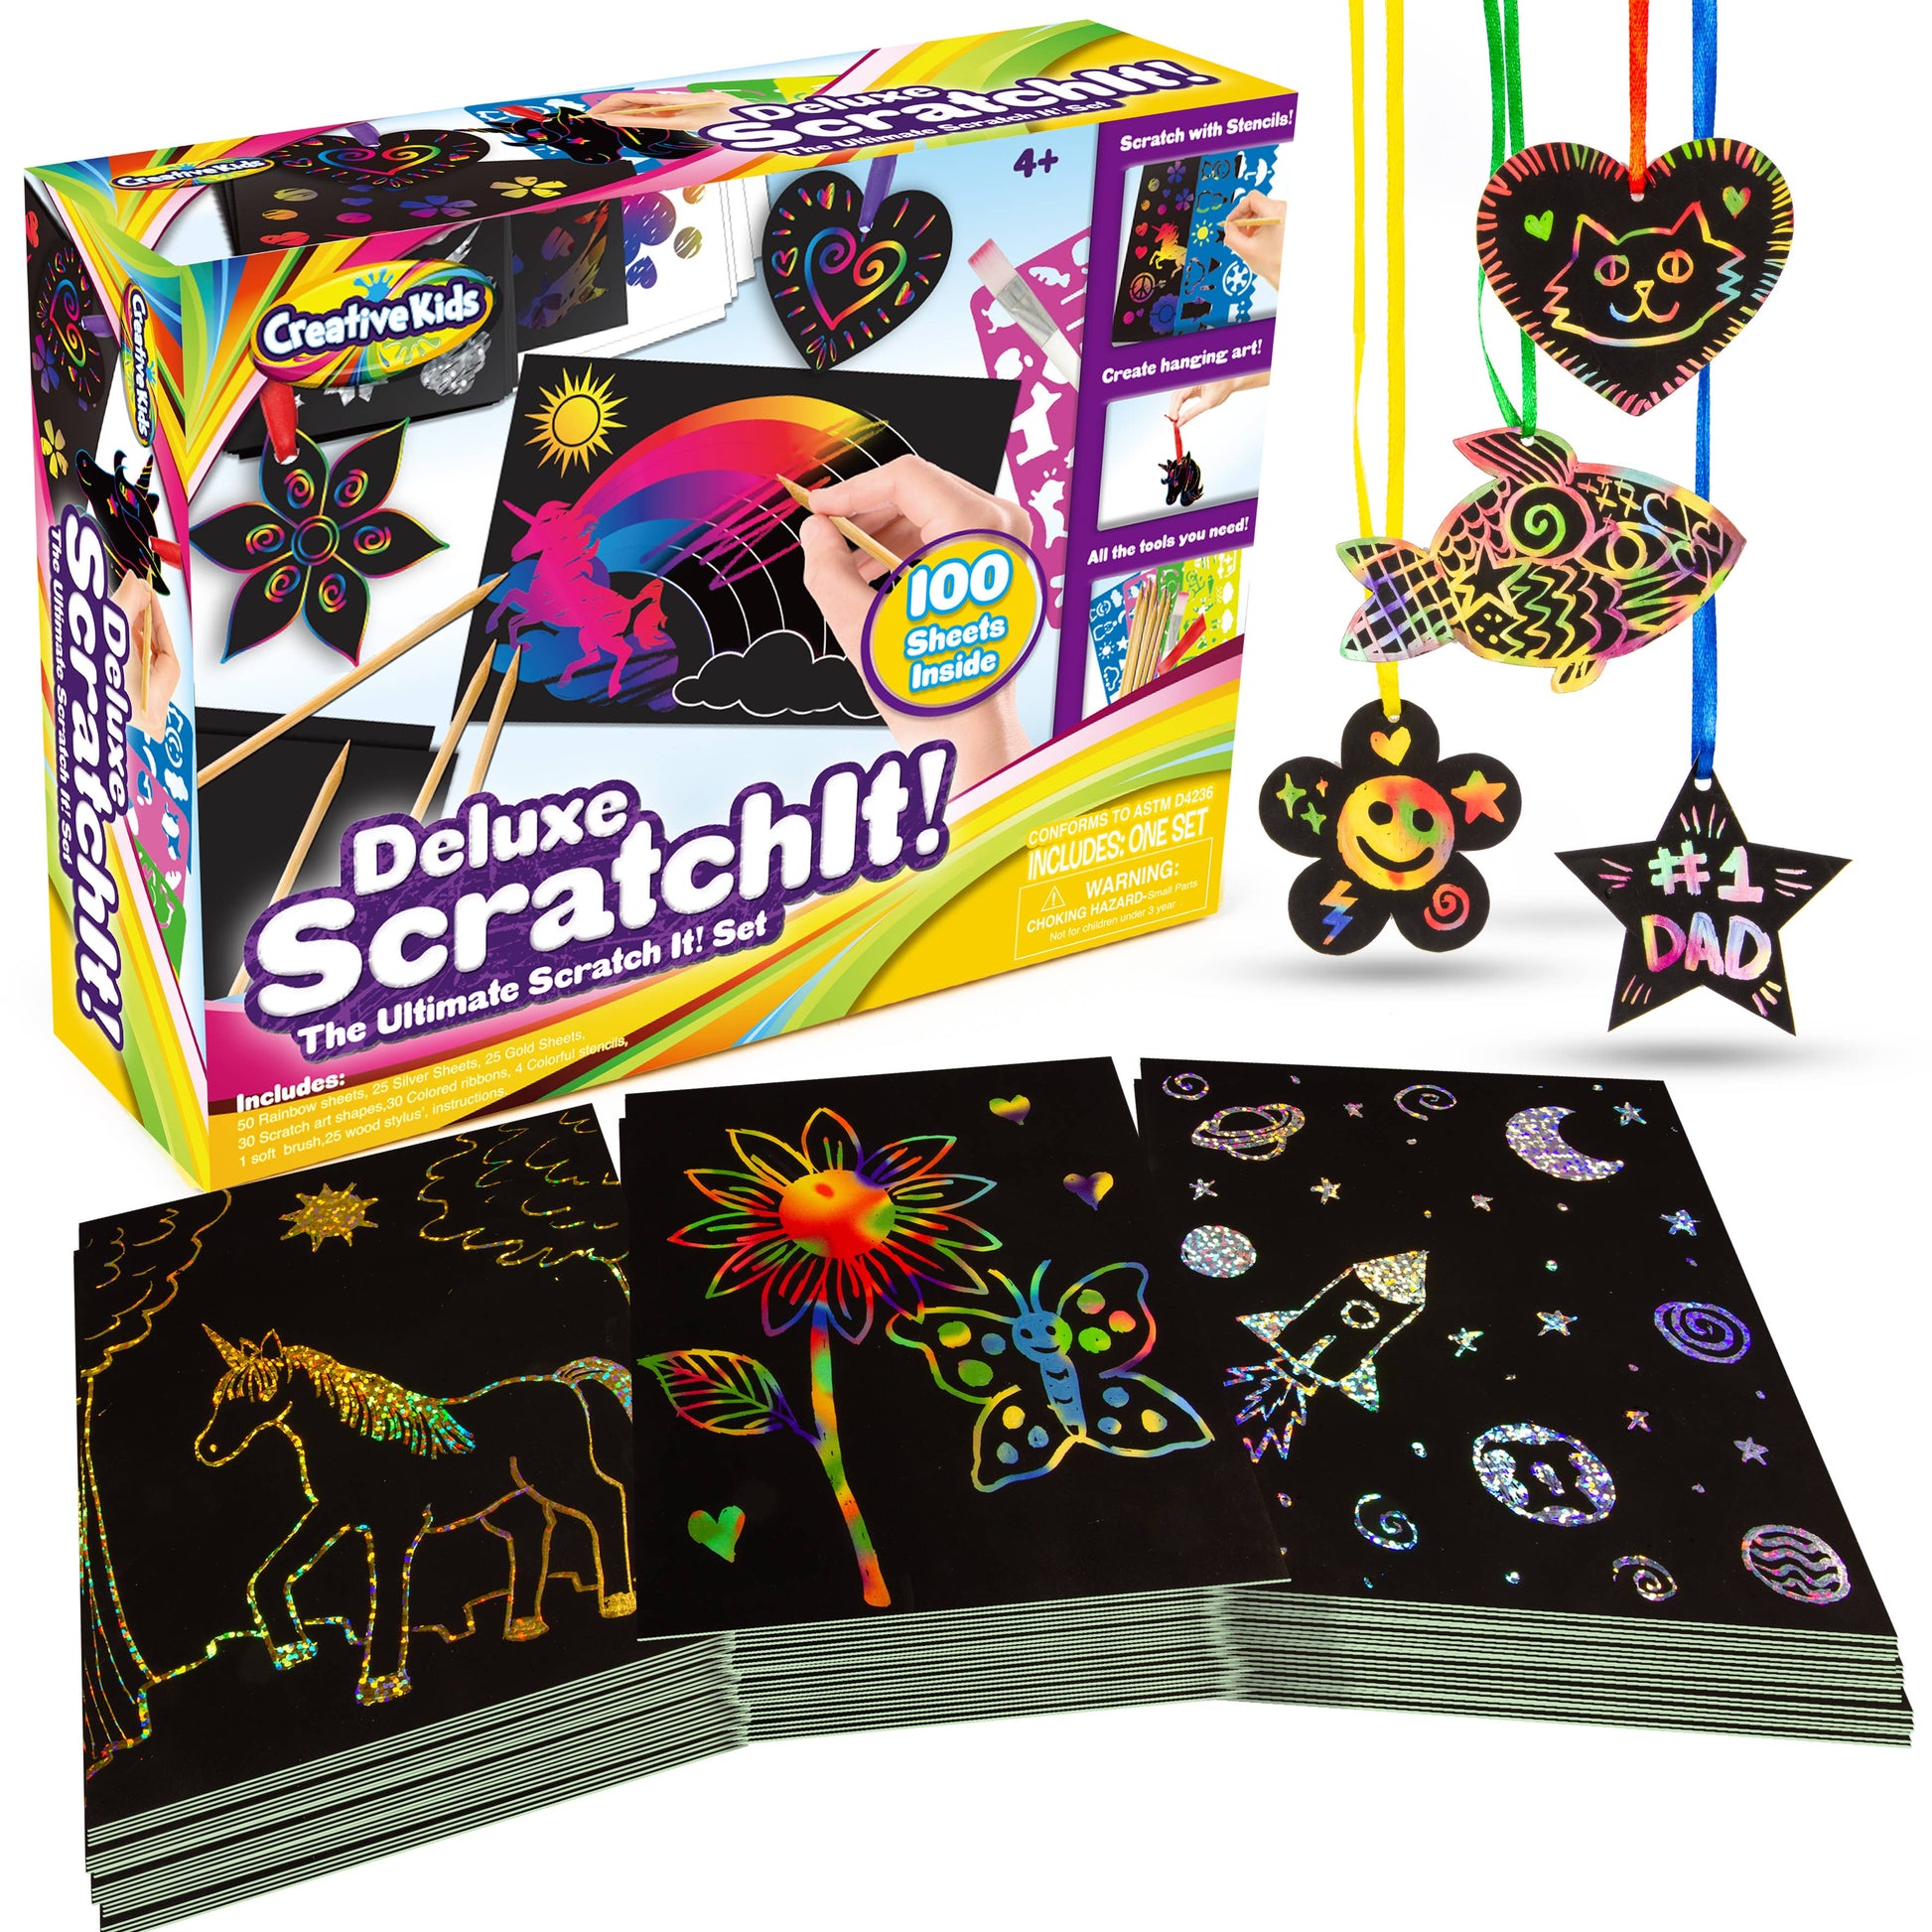 Magic Paper Scratch Stencil, Rainbow Scratch Notes Kids